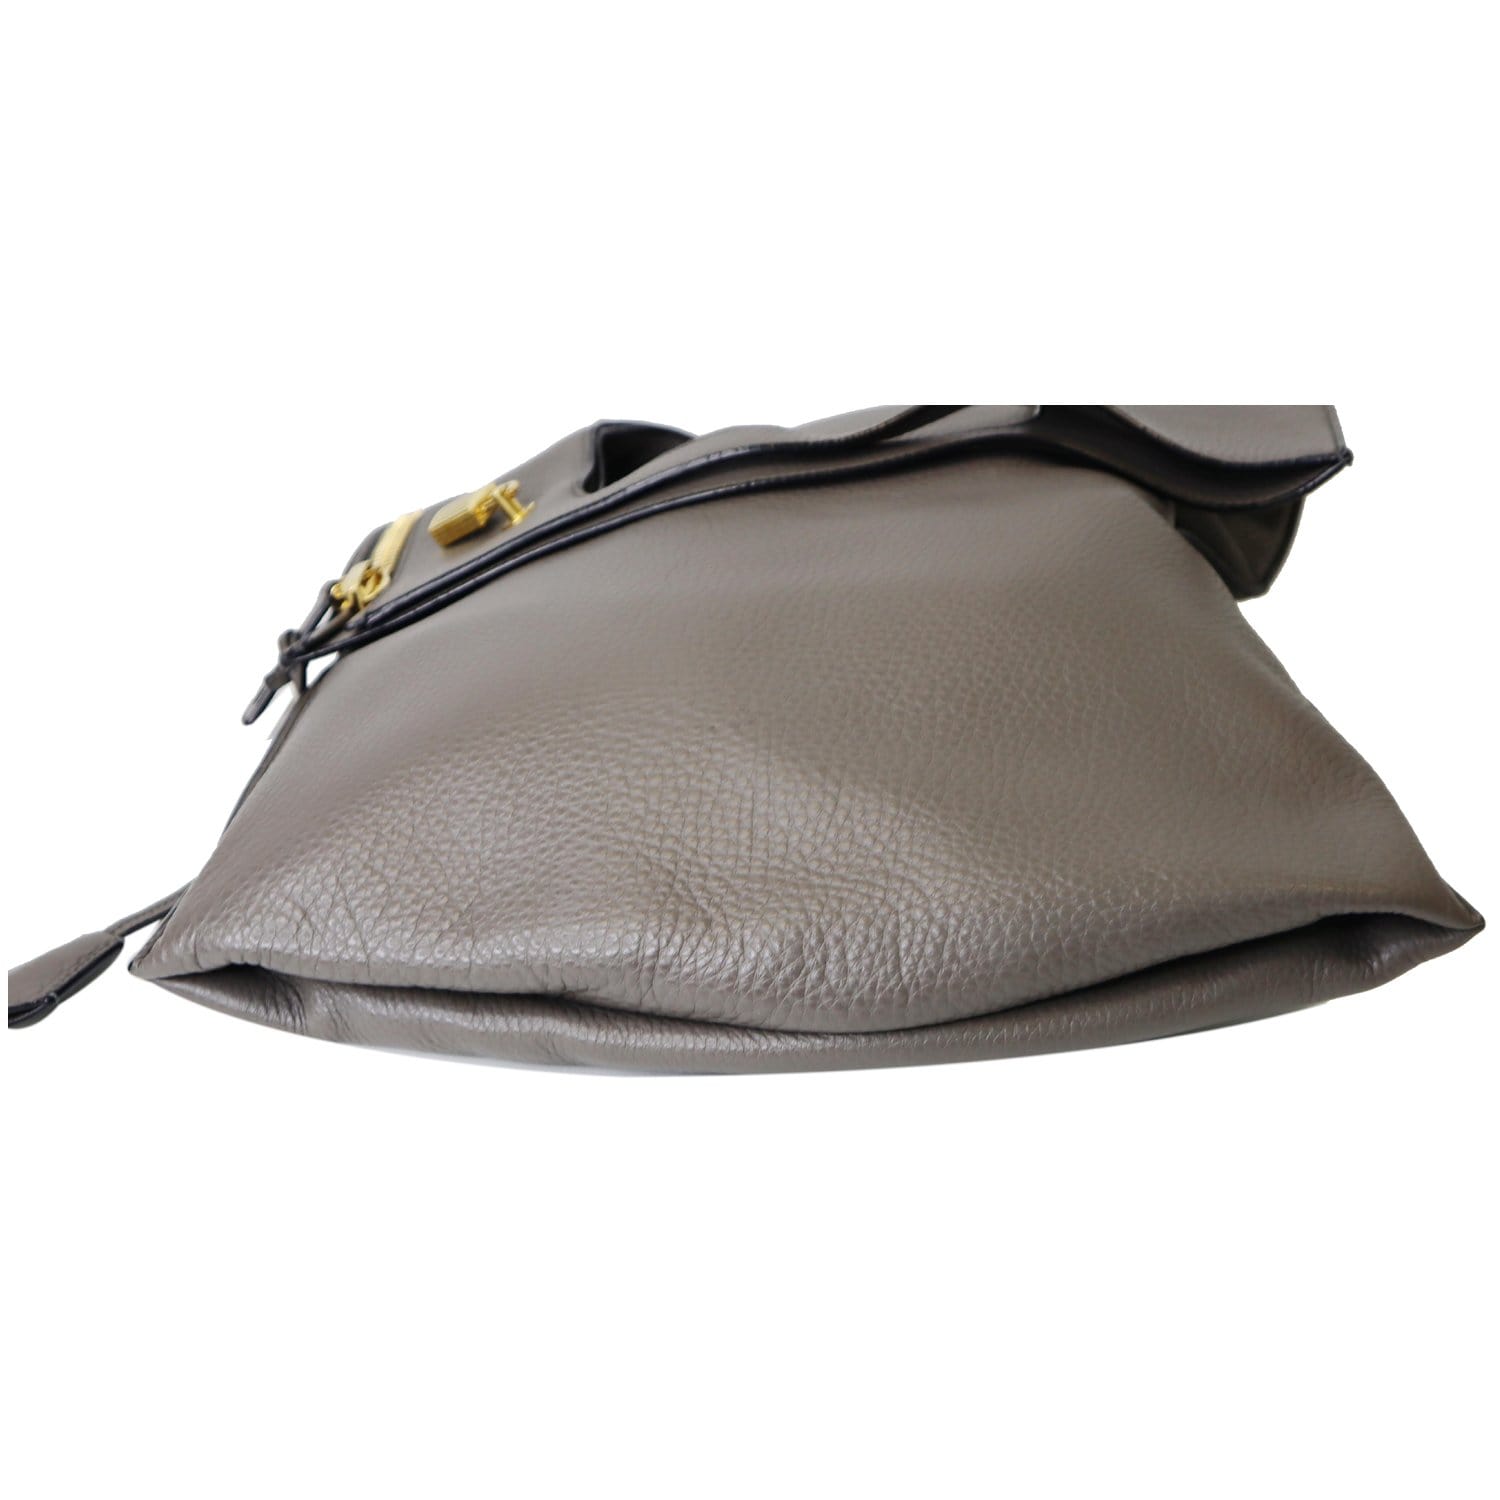 TOM FORD Bag ALIX Fold-Over Navy Blue Pebbled Calfskin Leather Shoulder Bag  B443